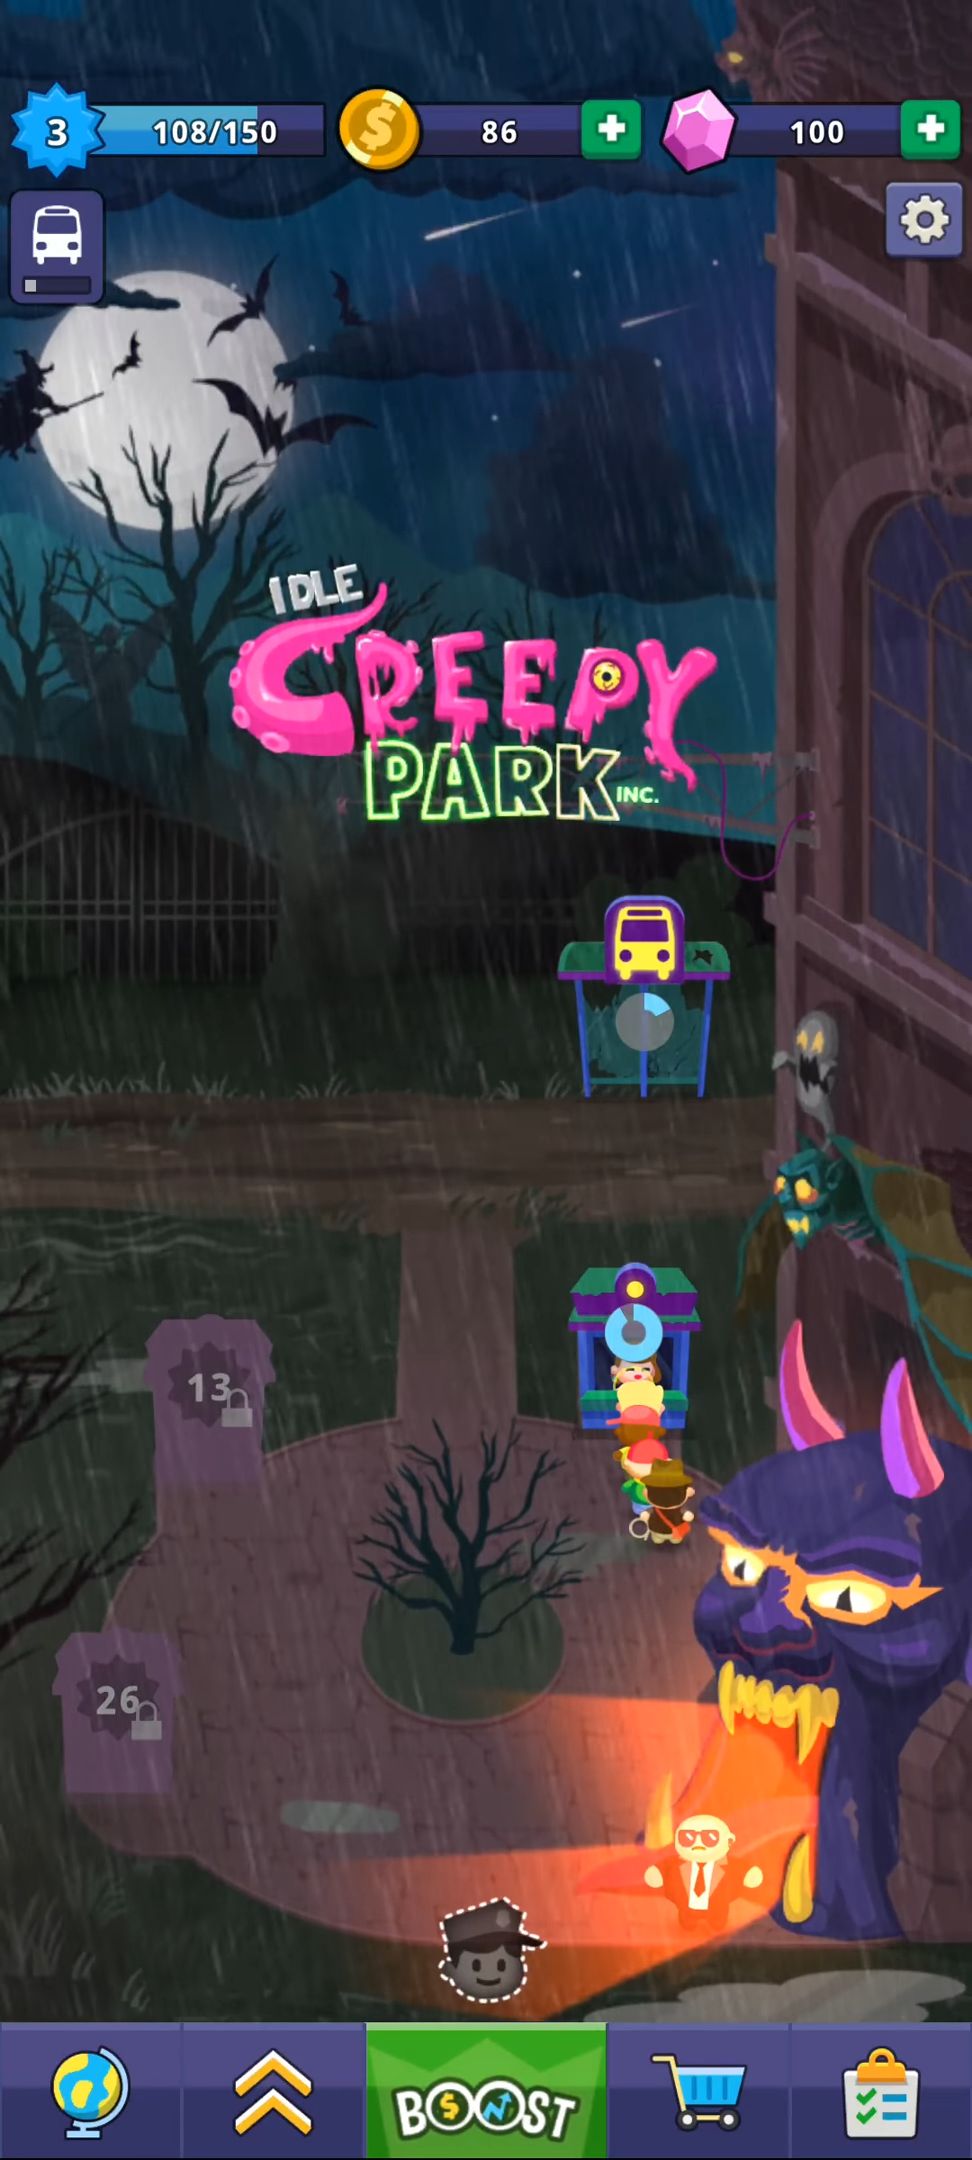 Descargar Idle Creepy Park Inc. gratis para Android.